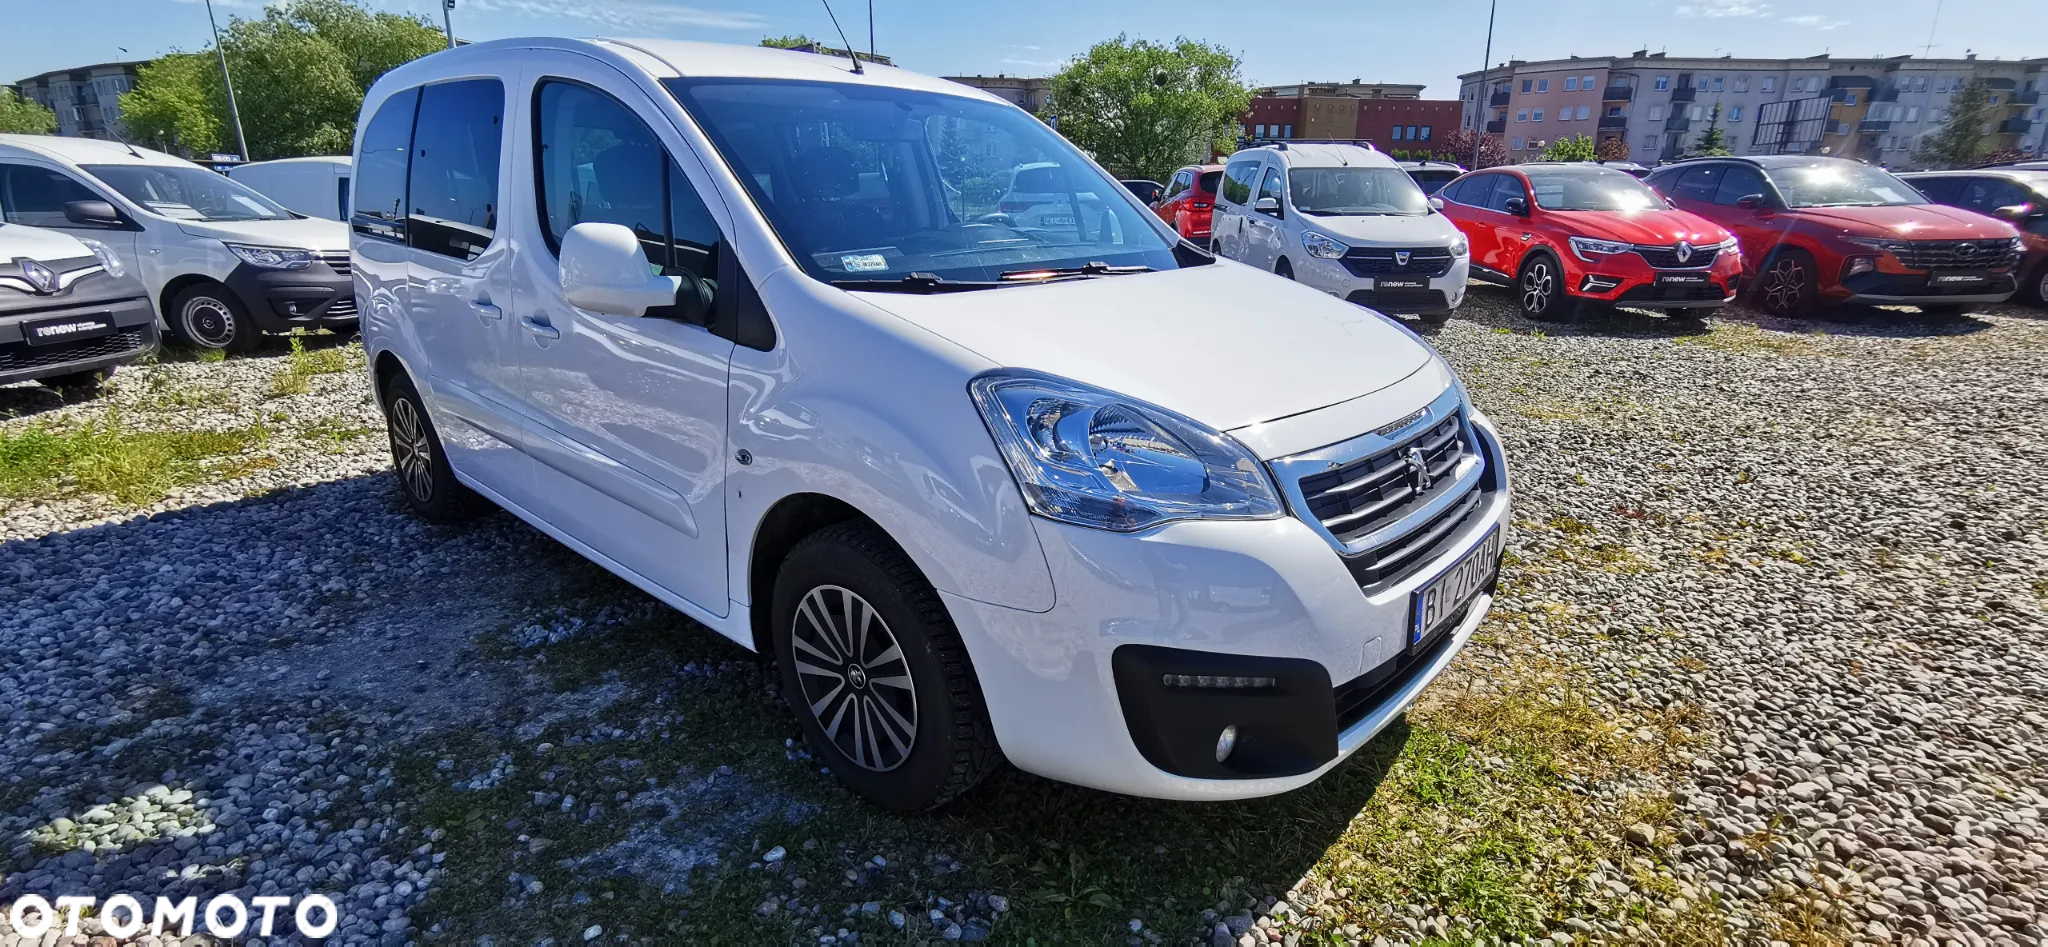 Peugeot Partner - 5